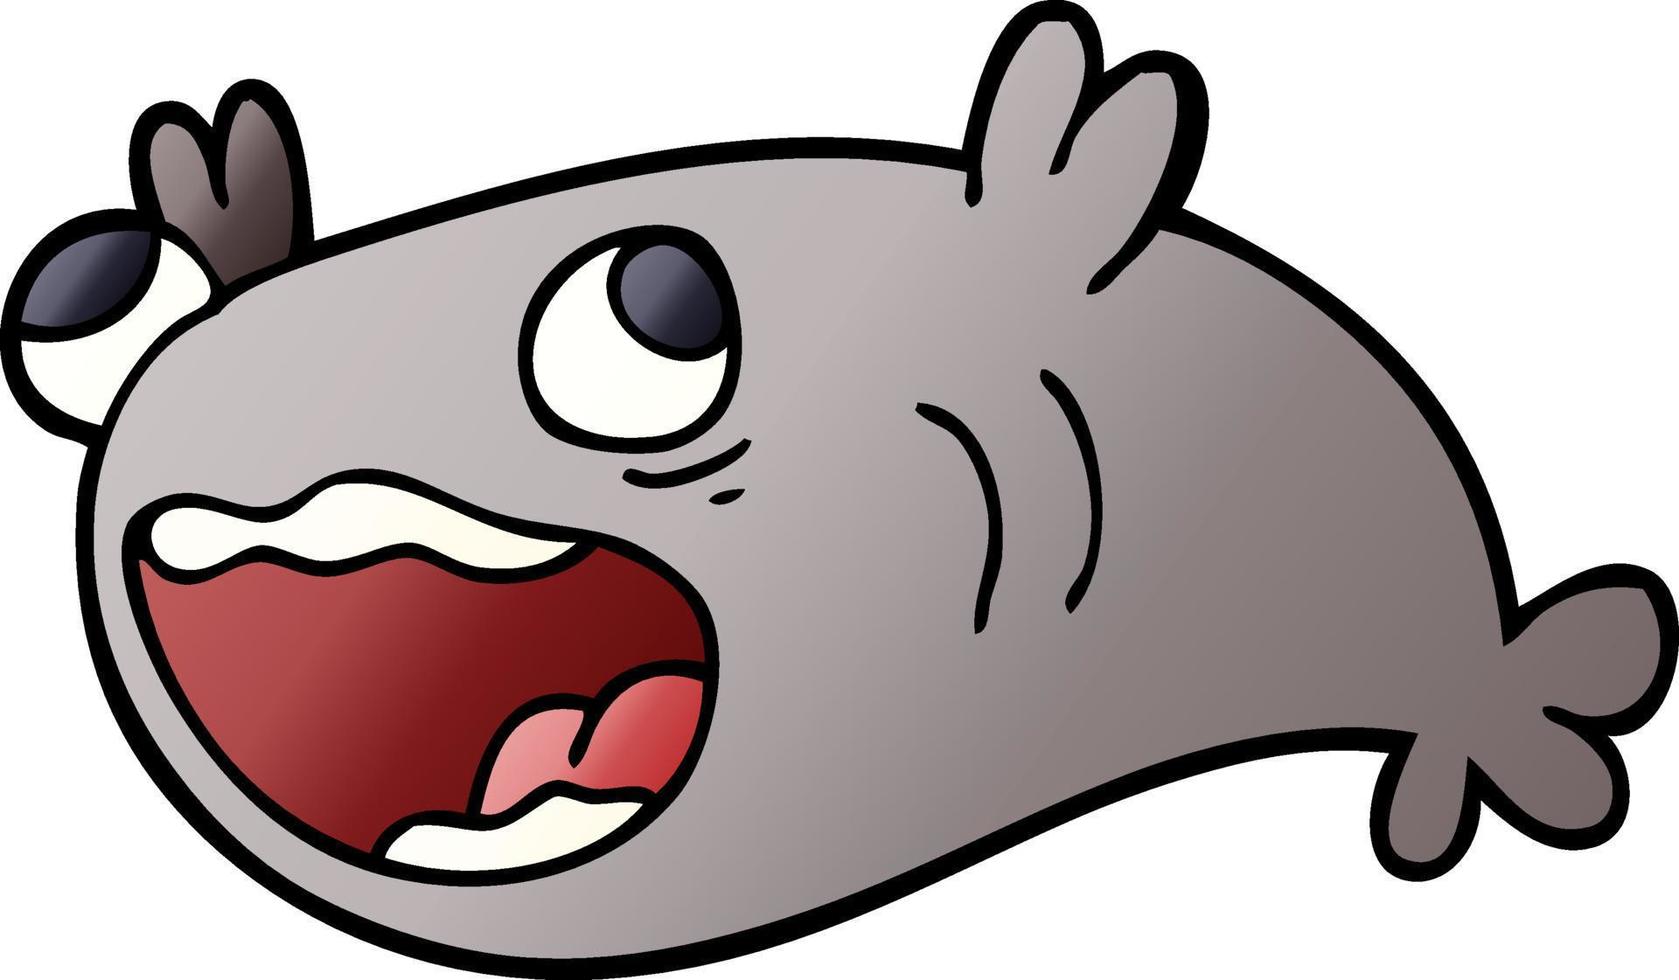 Cartoon-Doodle eines Fisches vektor